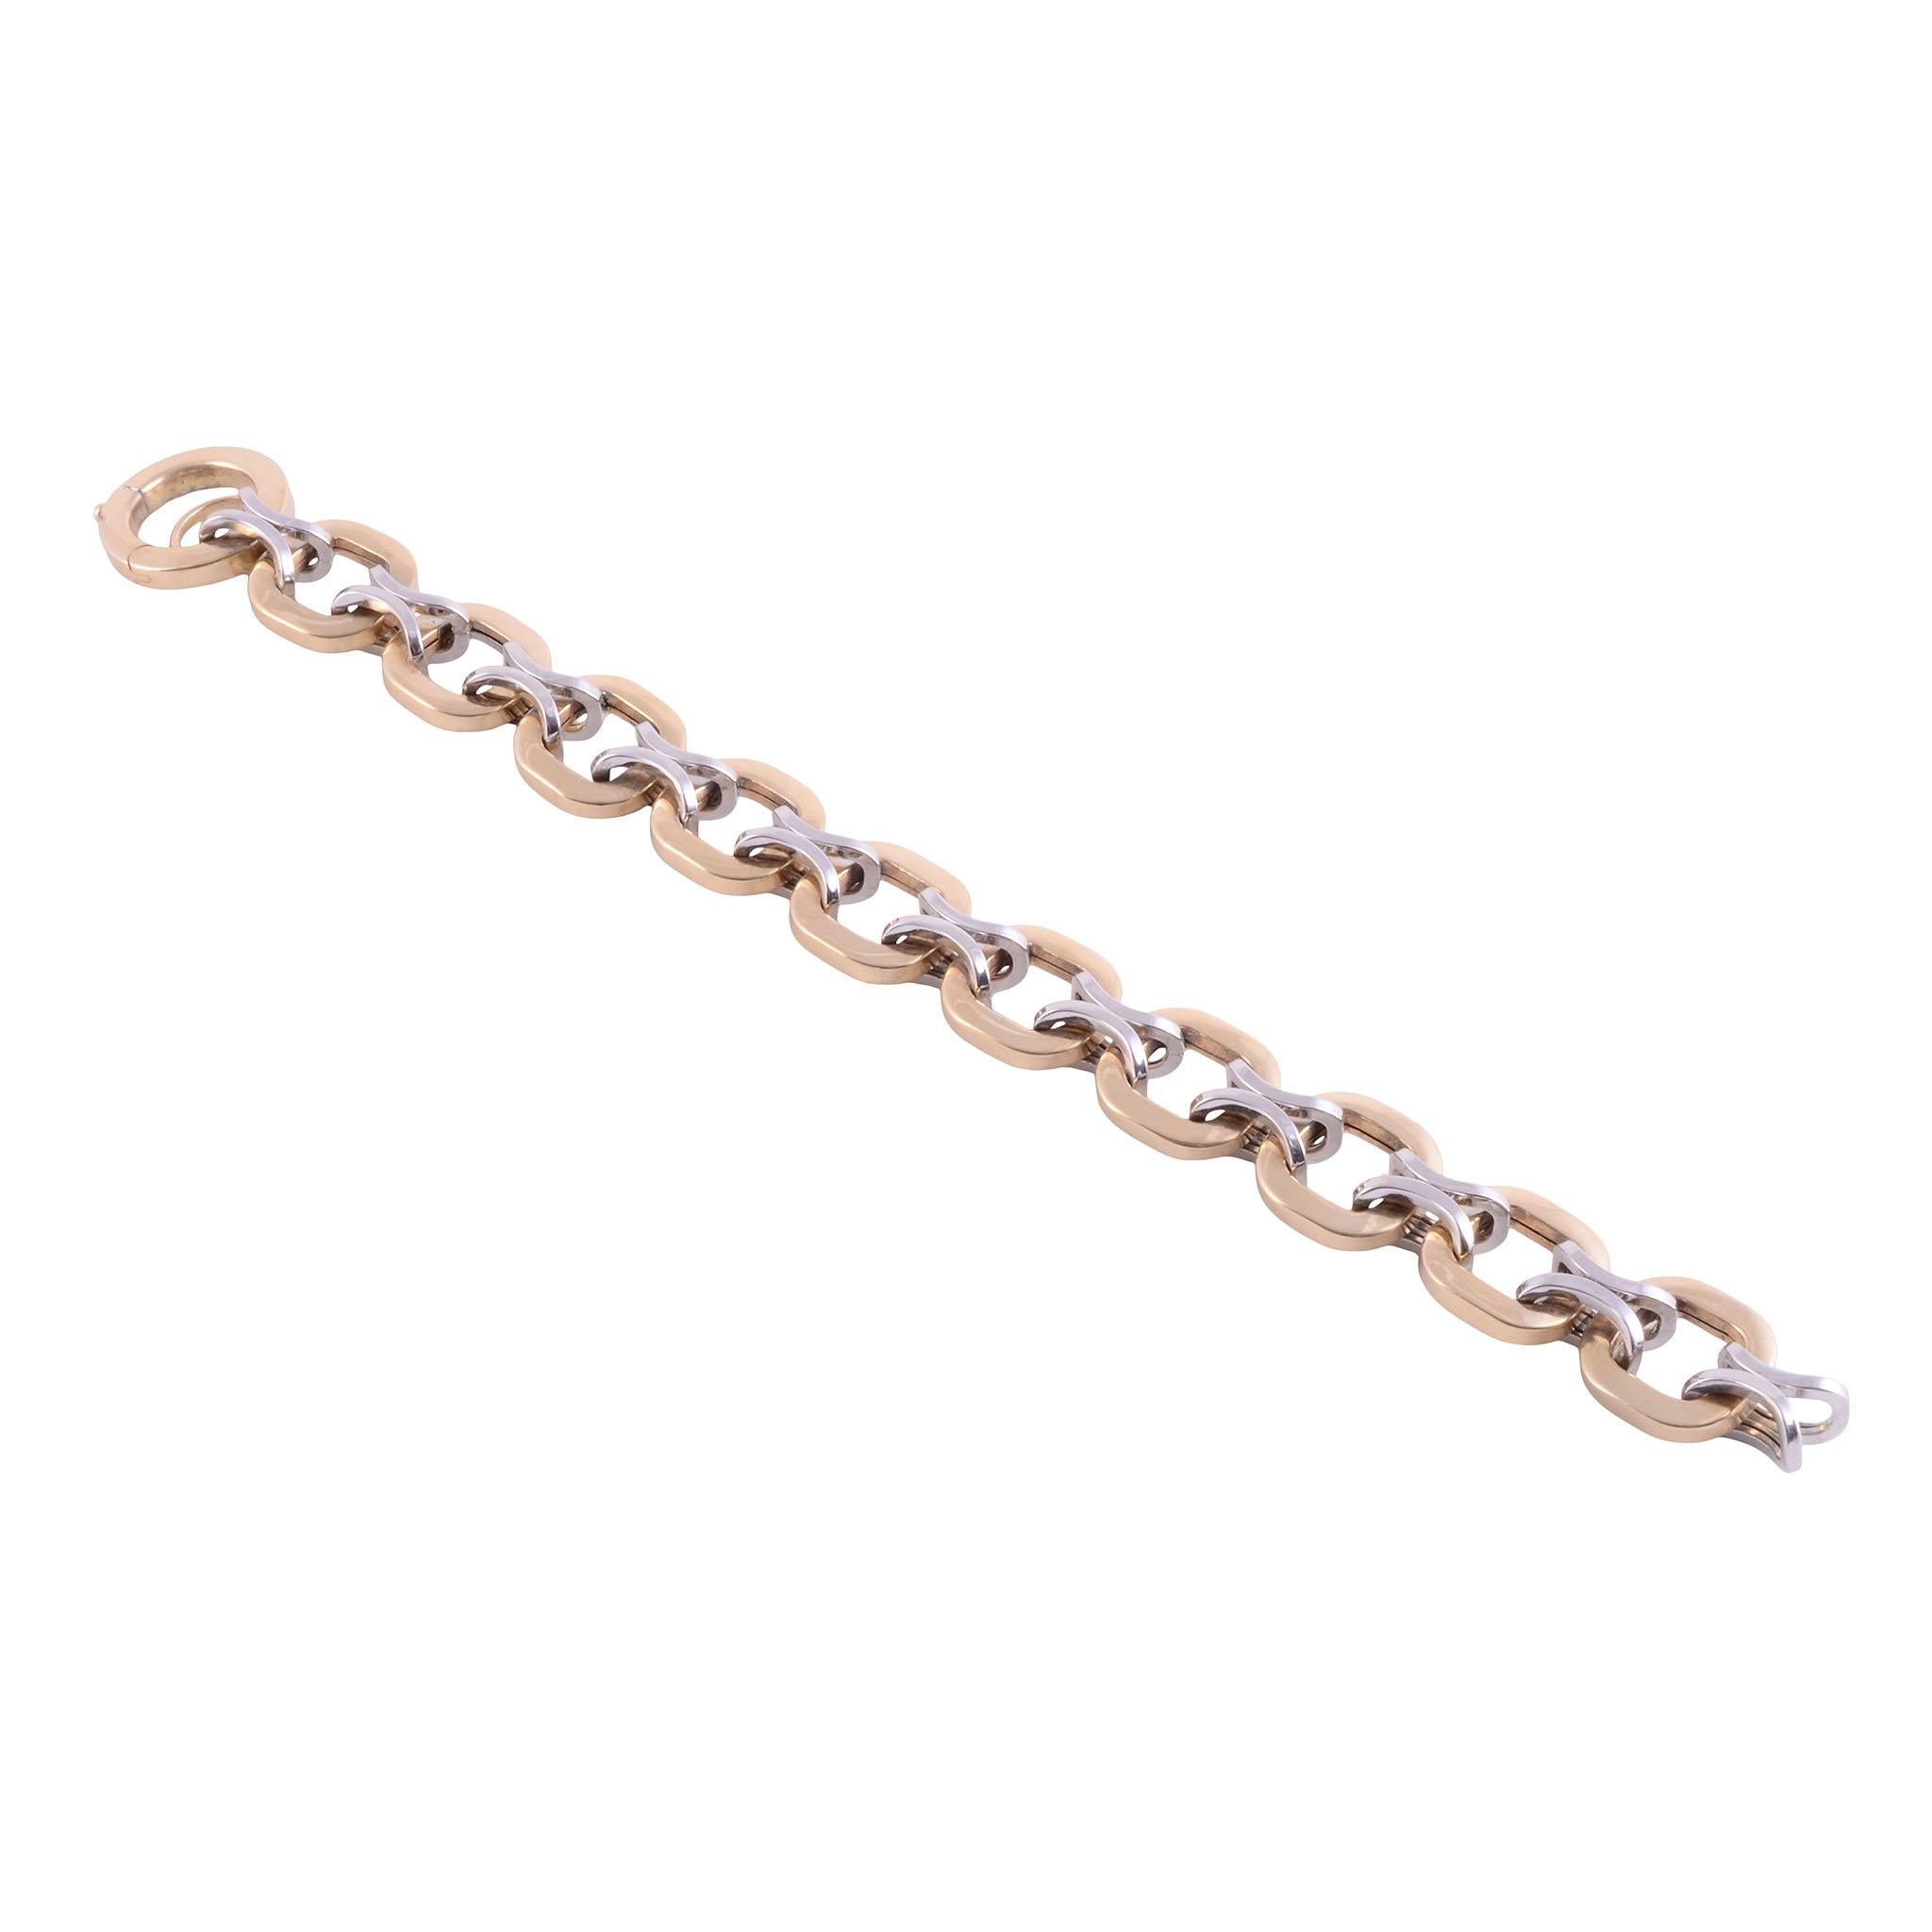 Estate 14K hollow link bracelet. This 14 karat gold hollow link bracelet is in good condition. [KIMH 2022 P]

Dimensions
7.5″L; 14.77mm links